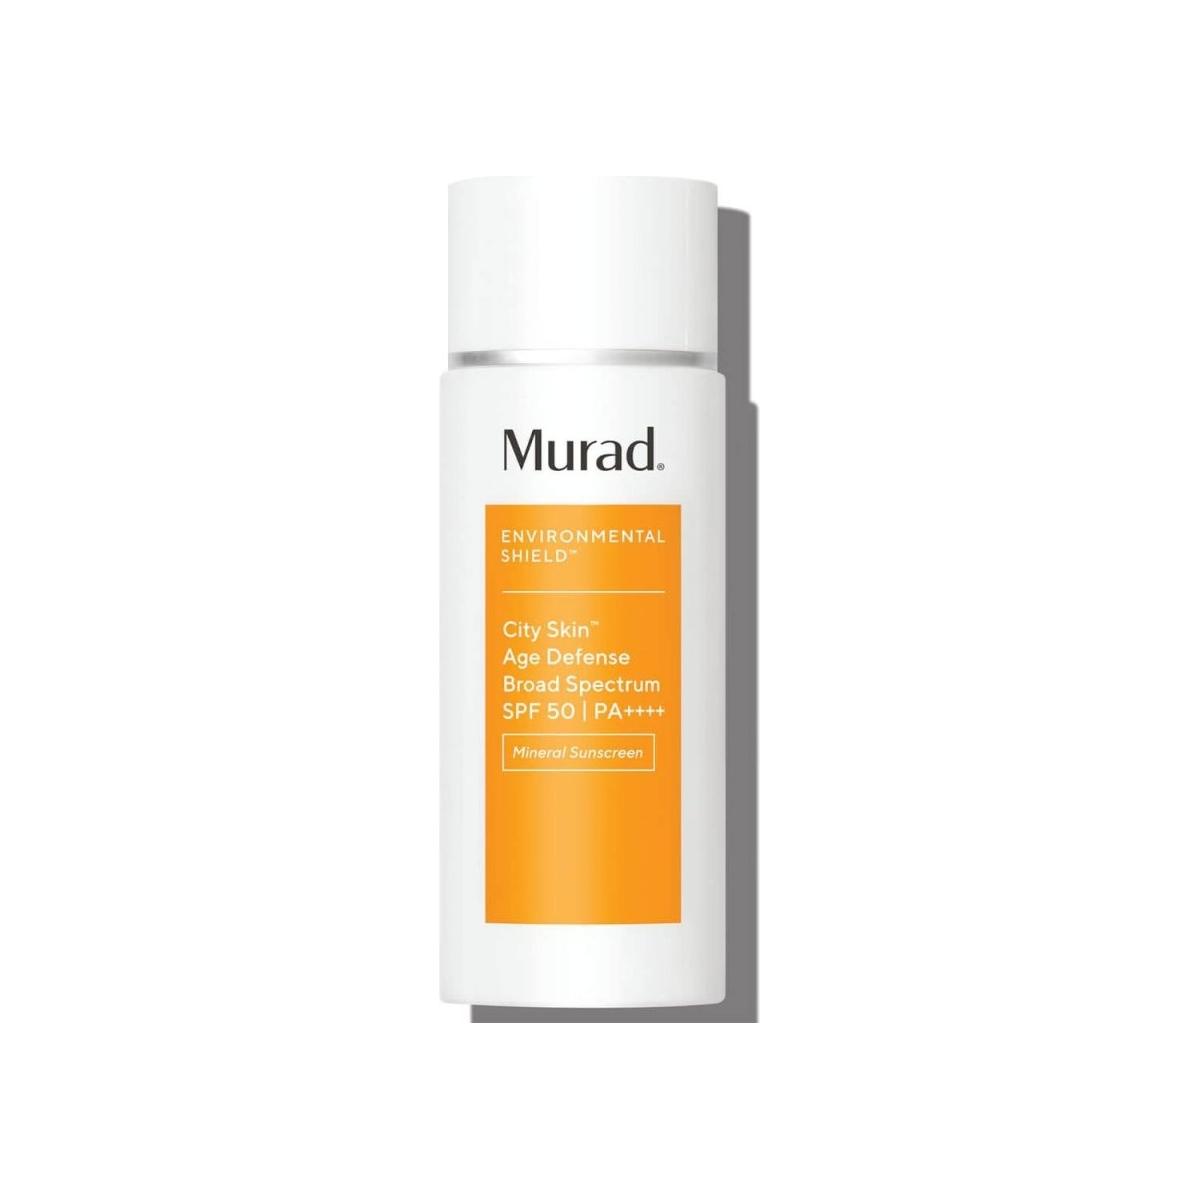 Murad City Skin Age Defense Broad Spectrum SPF 50 PA++++ - Glam Global UK